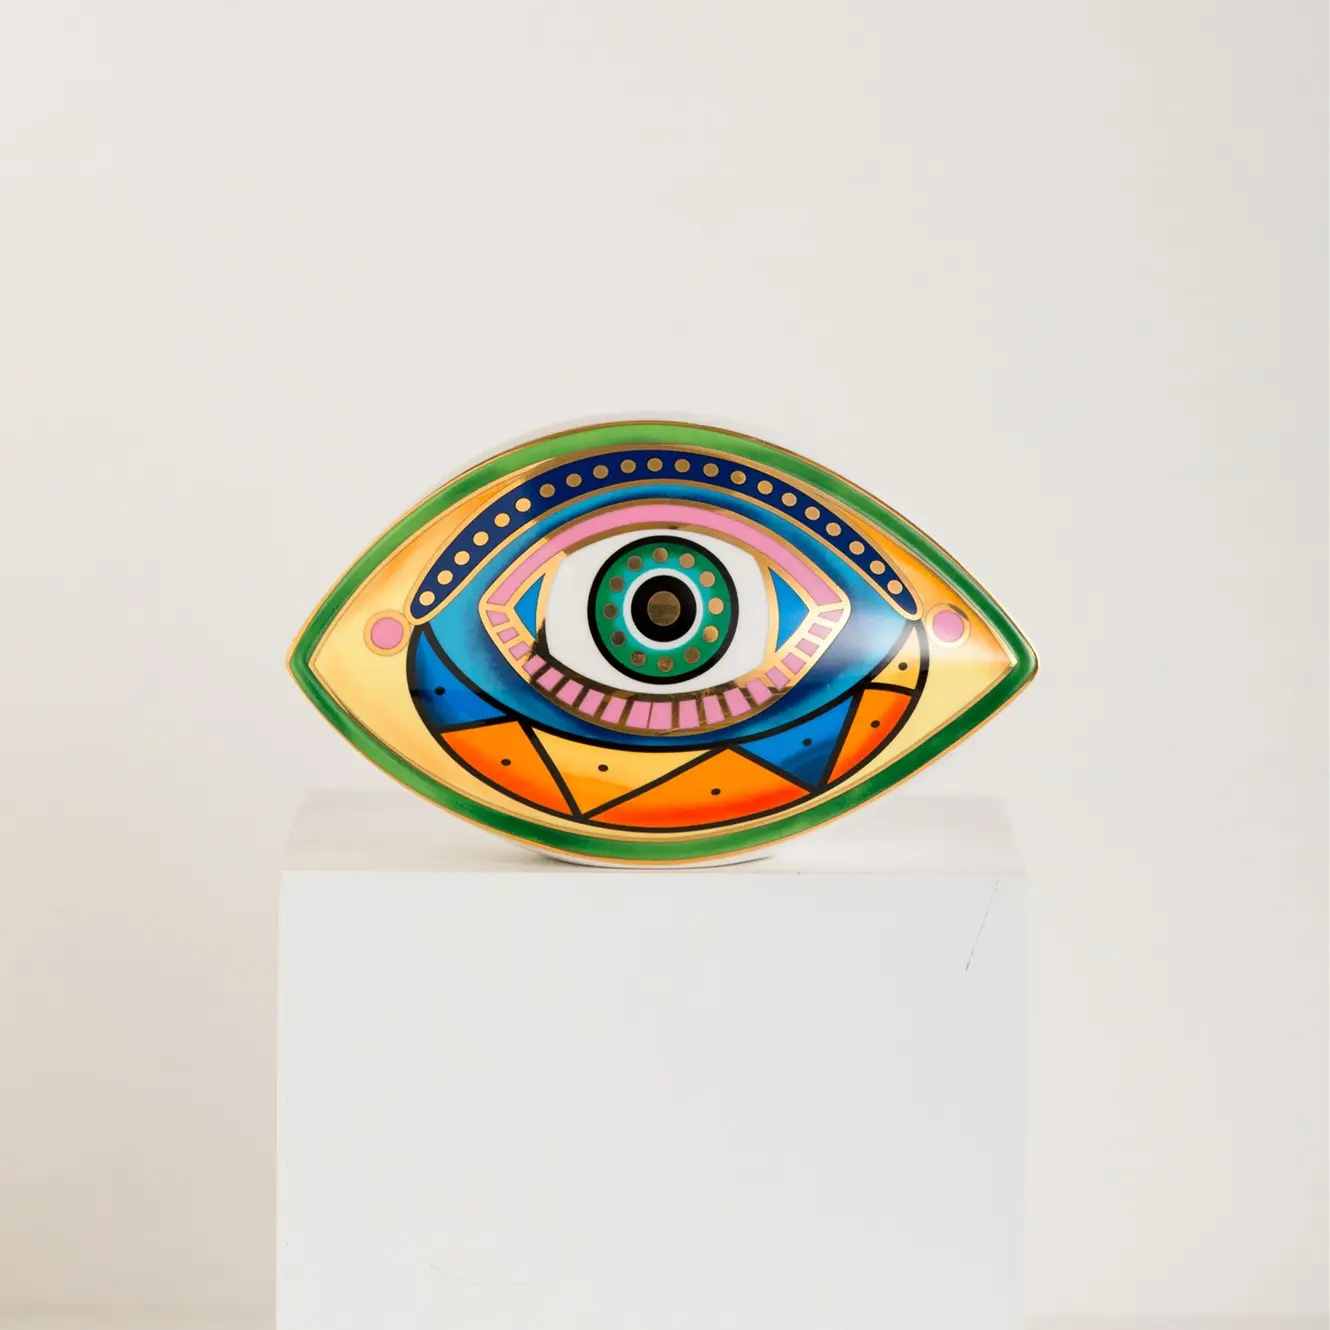 Custom Luxury Ceramic Eye Home Decor Spiritual Mandala Real Gold Porcelain Evil Eye Ornament For Home Decor Items Lucky Blessing